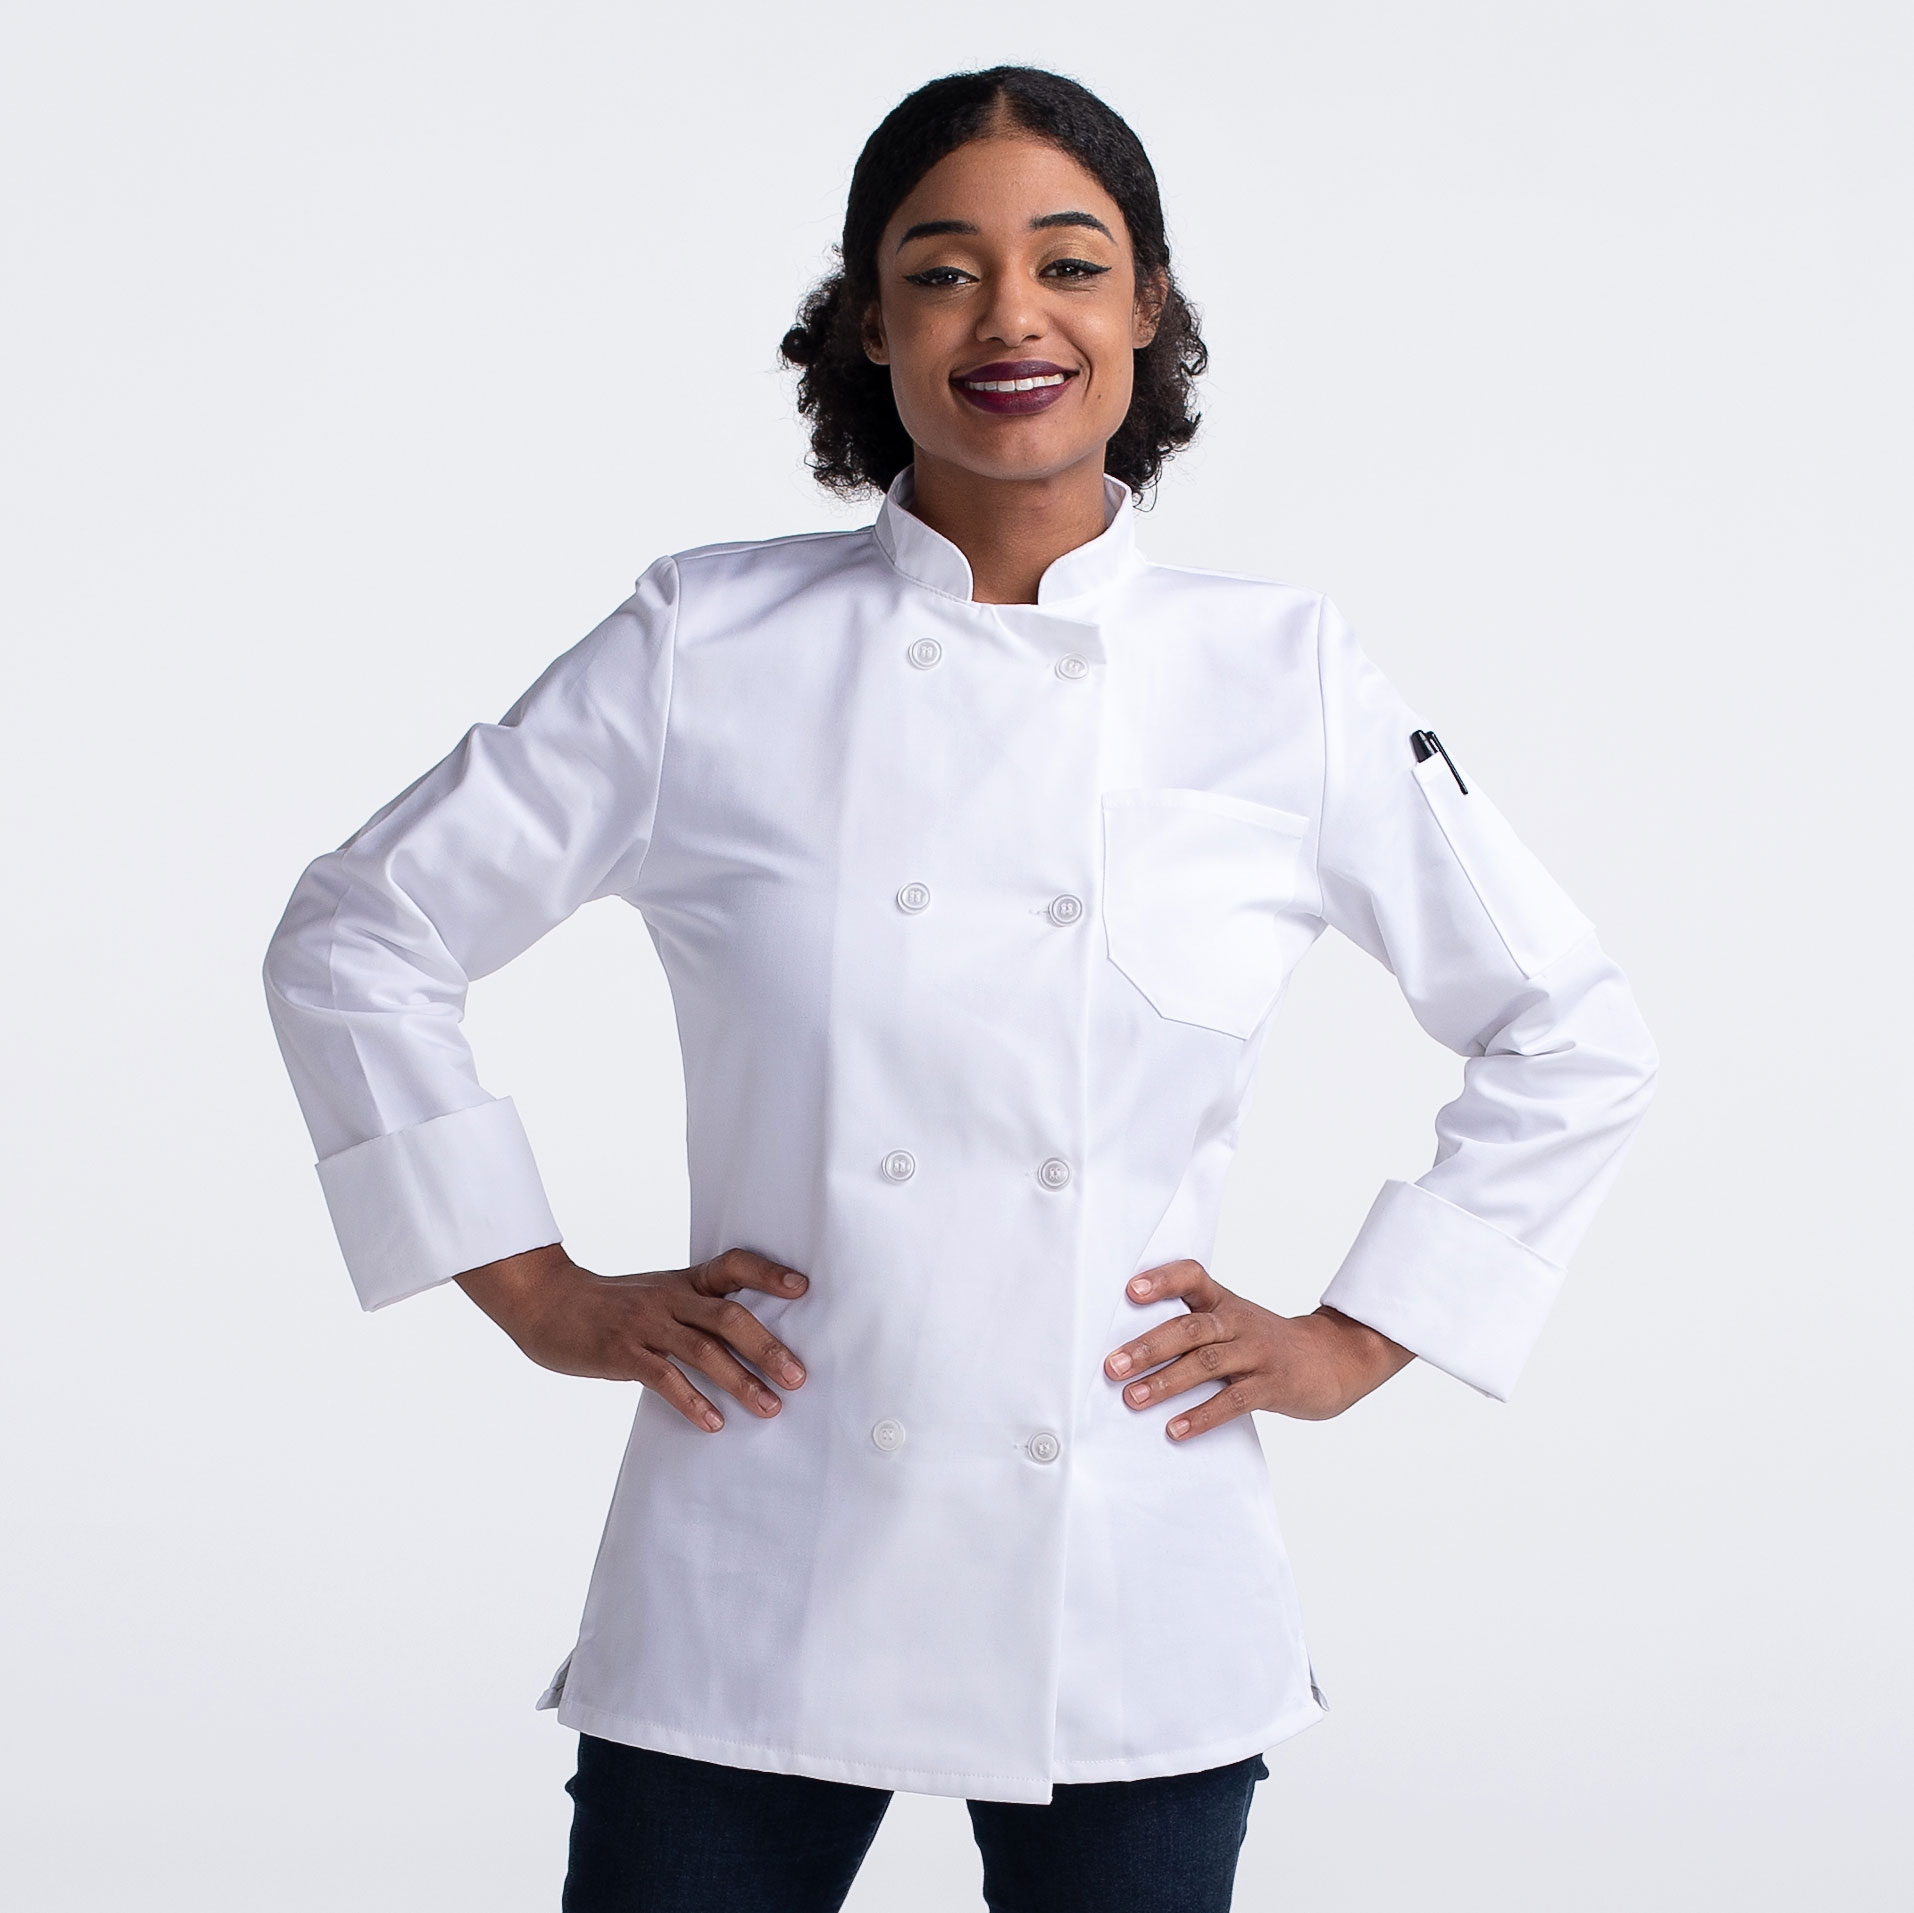 Unisex Chef Coat Chefs Jacket Catering Coat Short Sleeve Chefwear Tops Uniform 